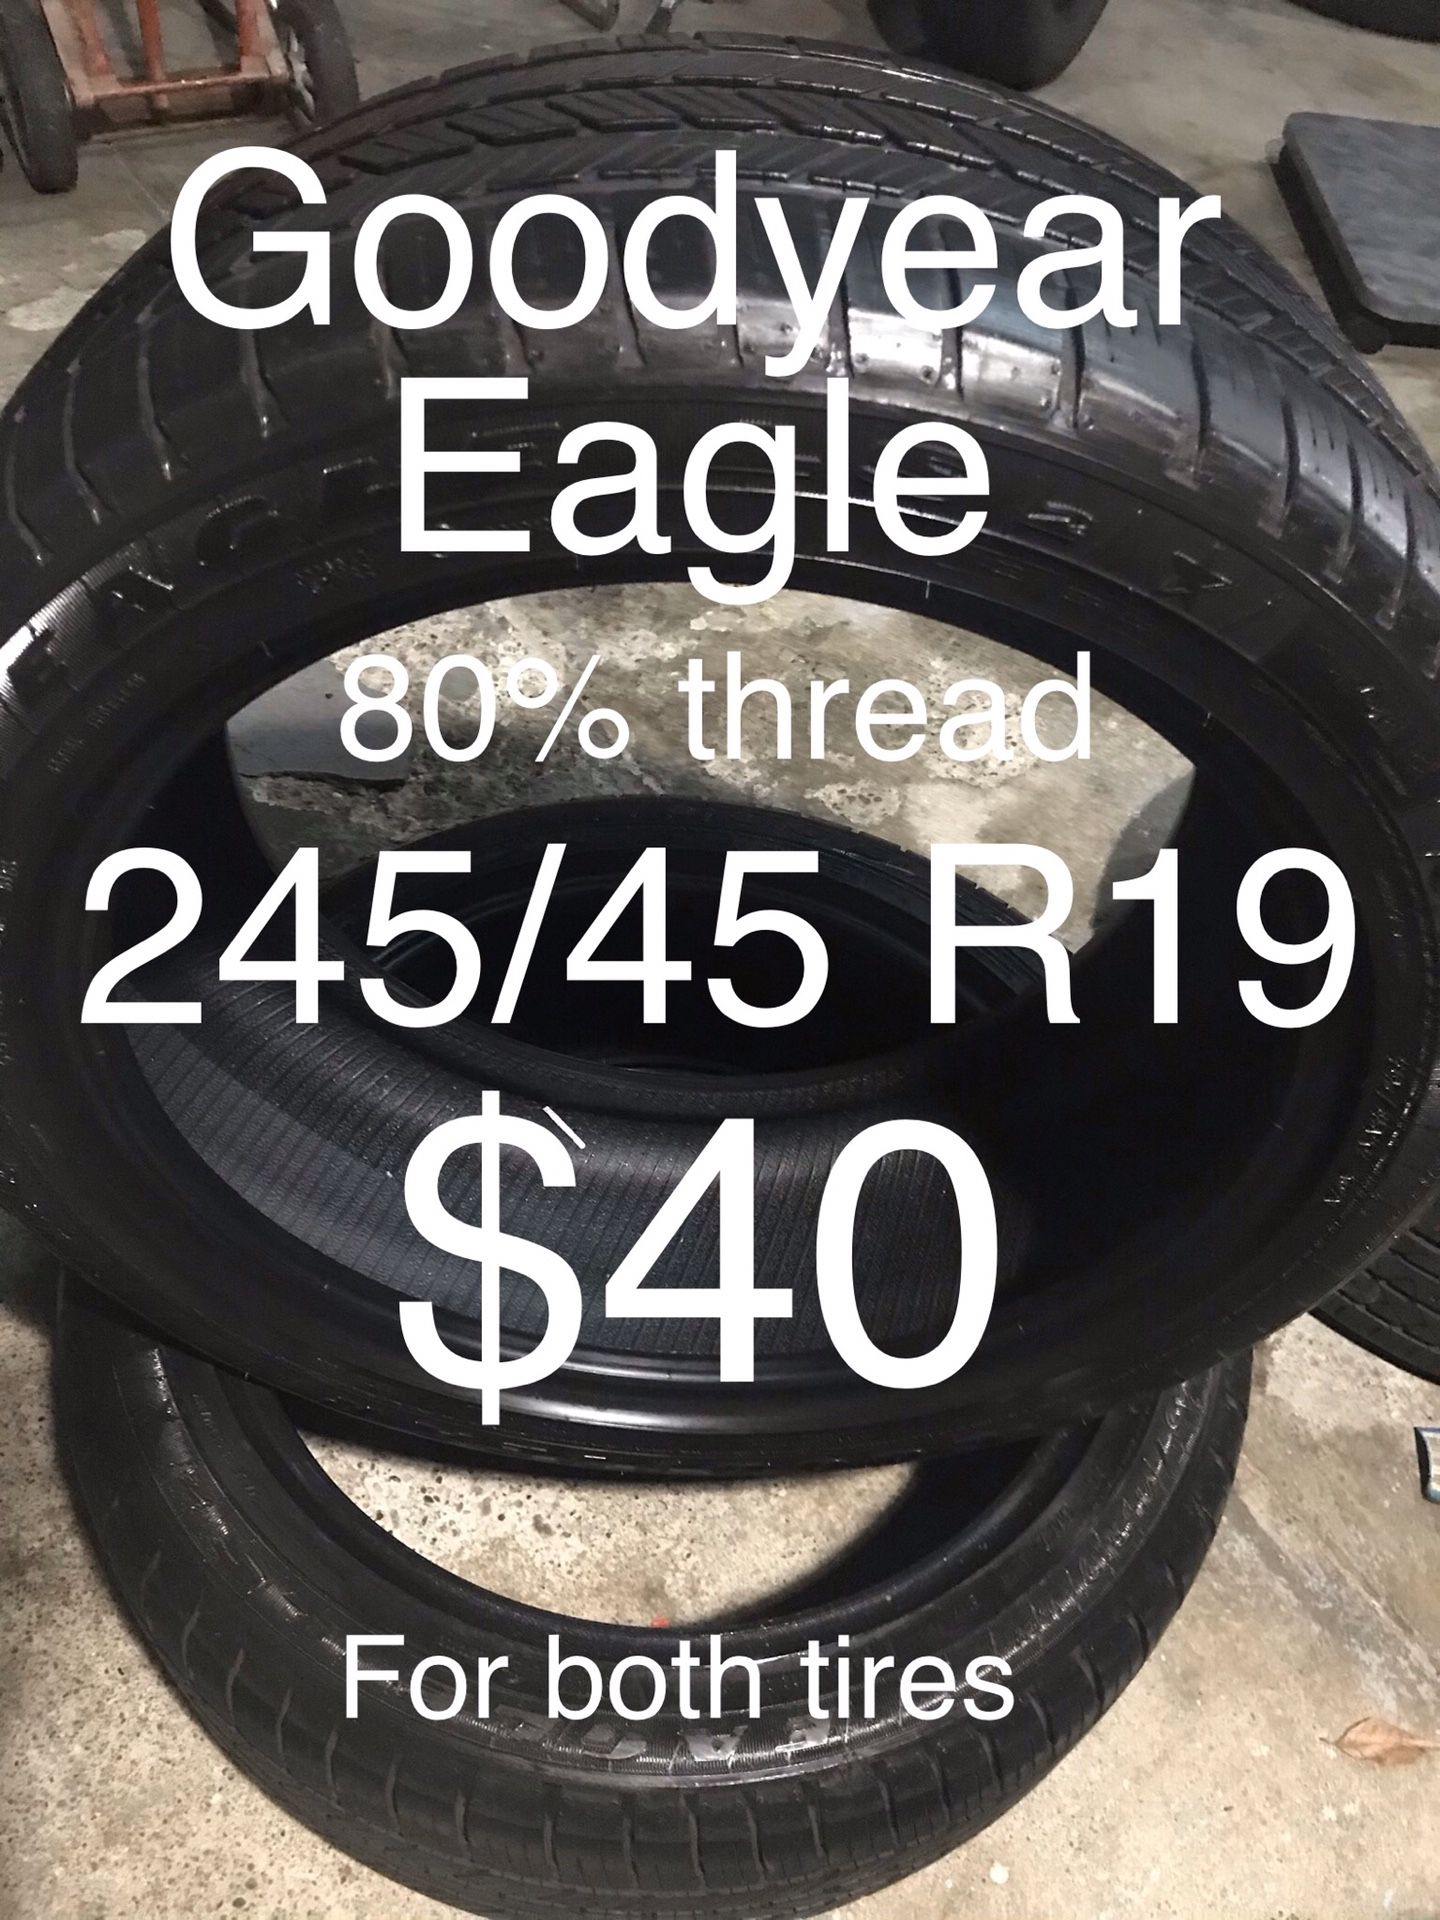 2 Goodyear Eagle 245/45 R19